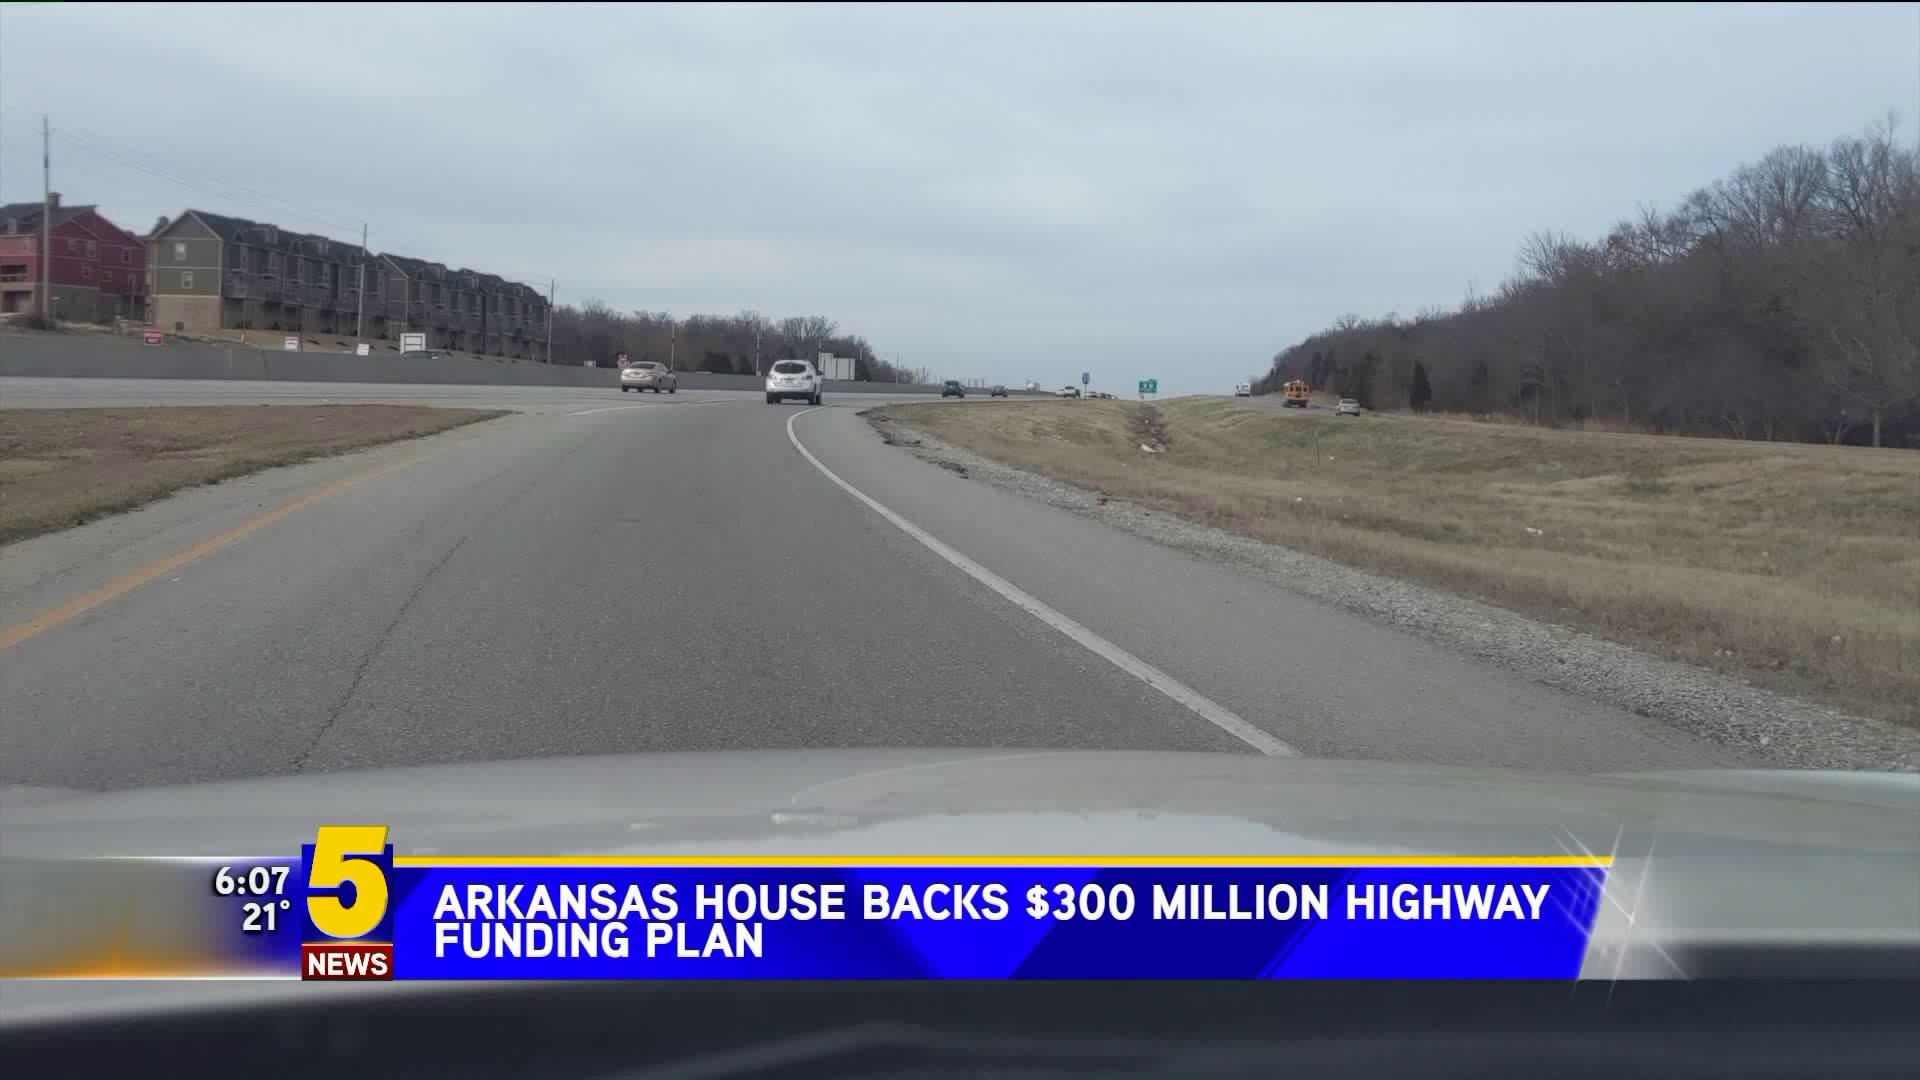 Arkansas House Backs $300 Million Highway Funding Plan